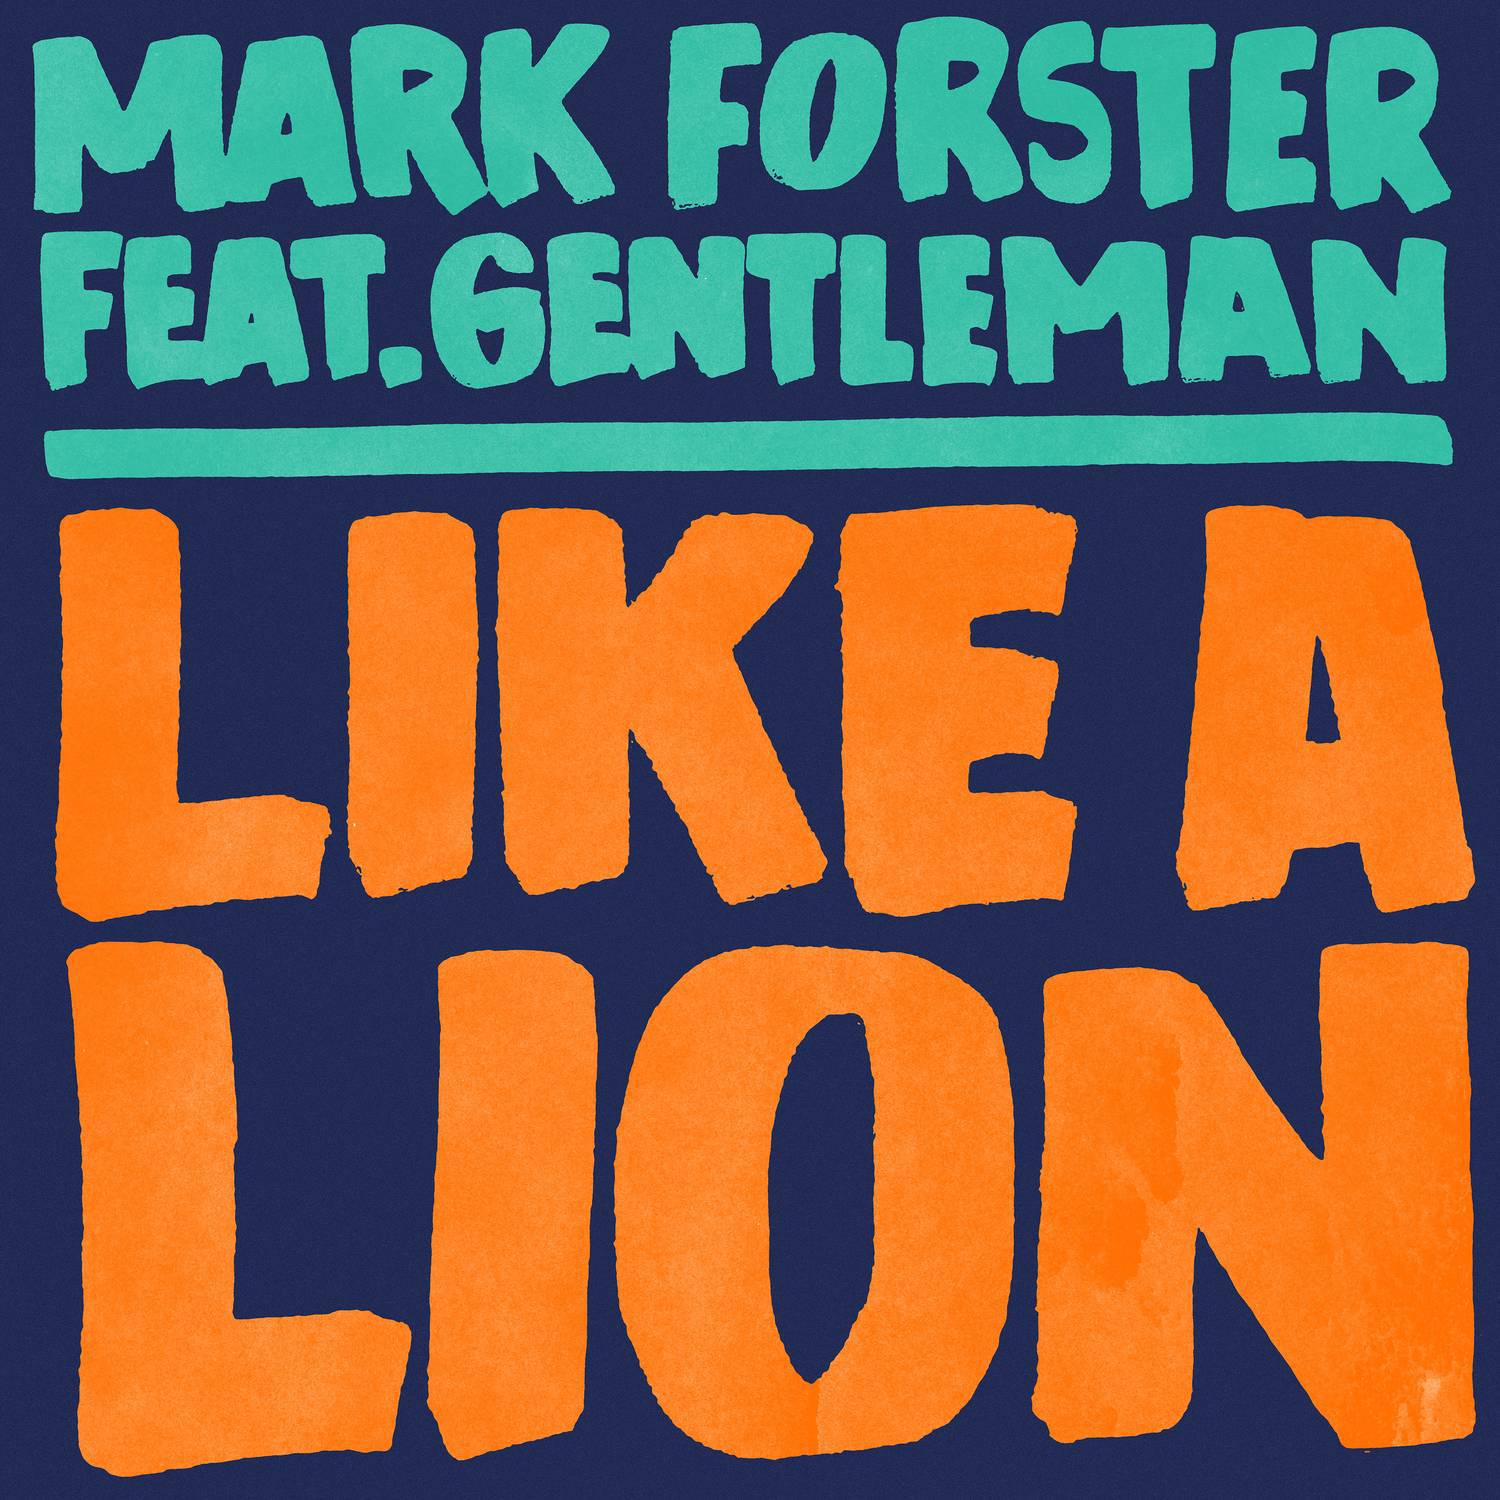 Like a Lion (Polish Version)专辑